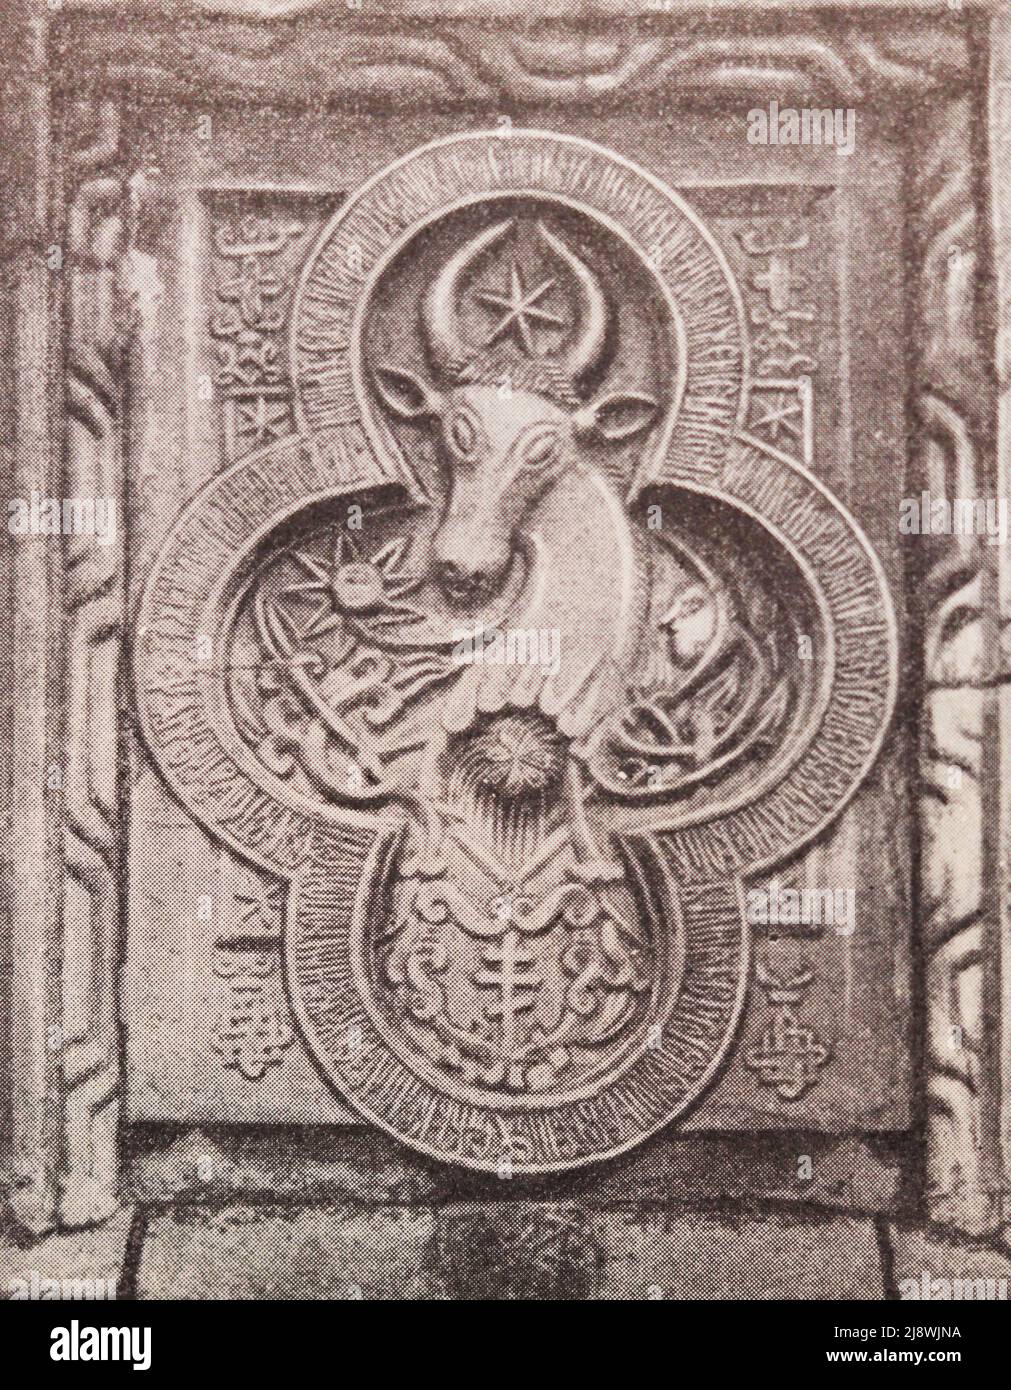 Escudo de armas estilizado de Moldova. Talla en piedra del siglo 17th. Foto de stock